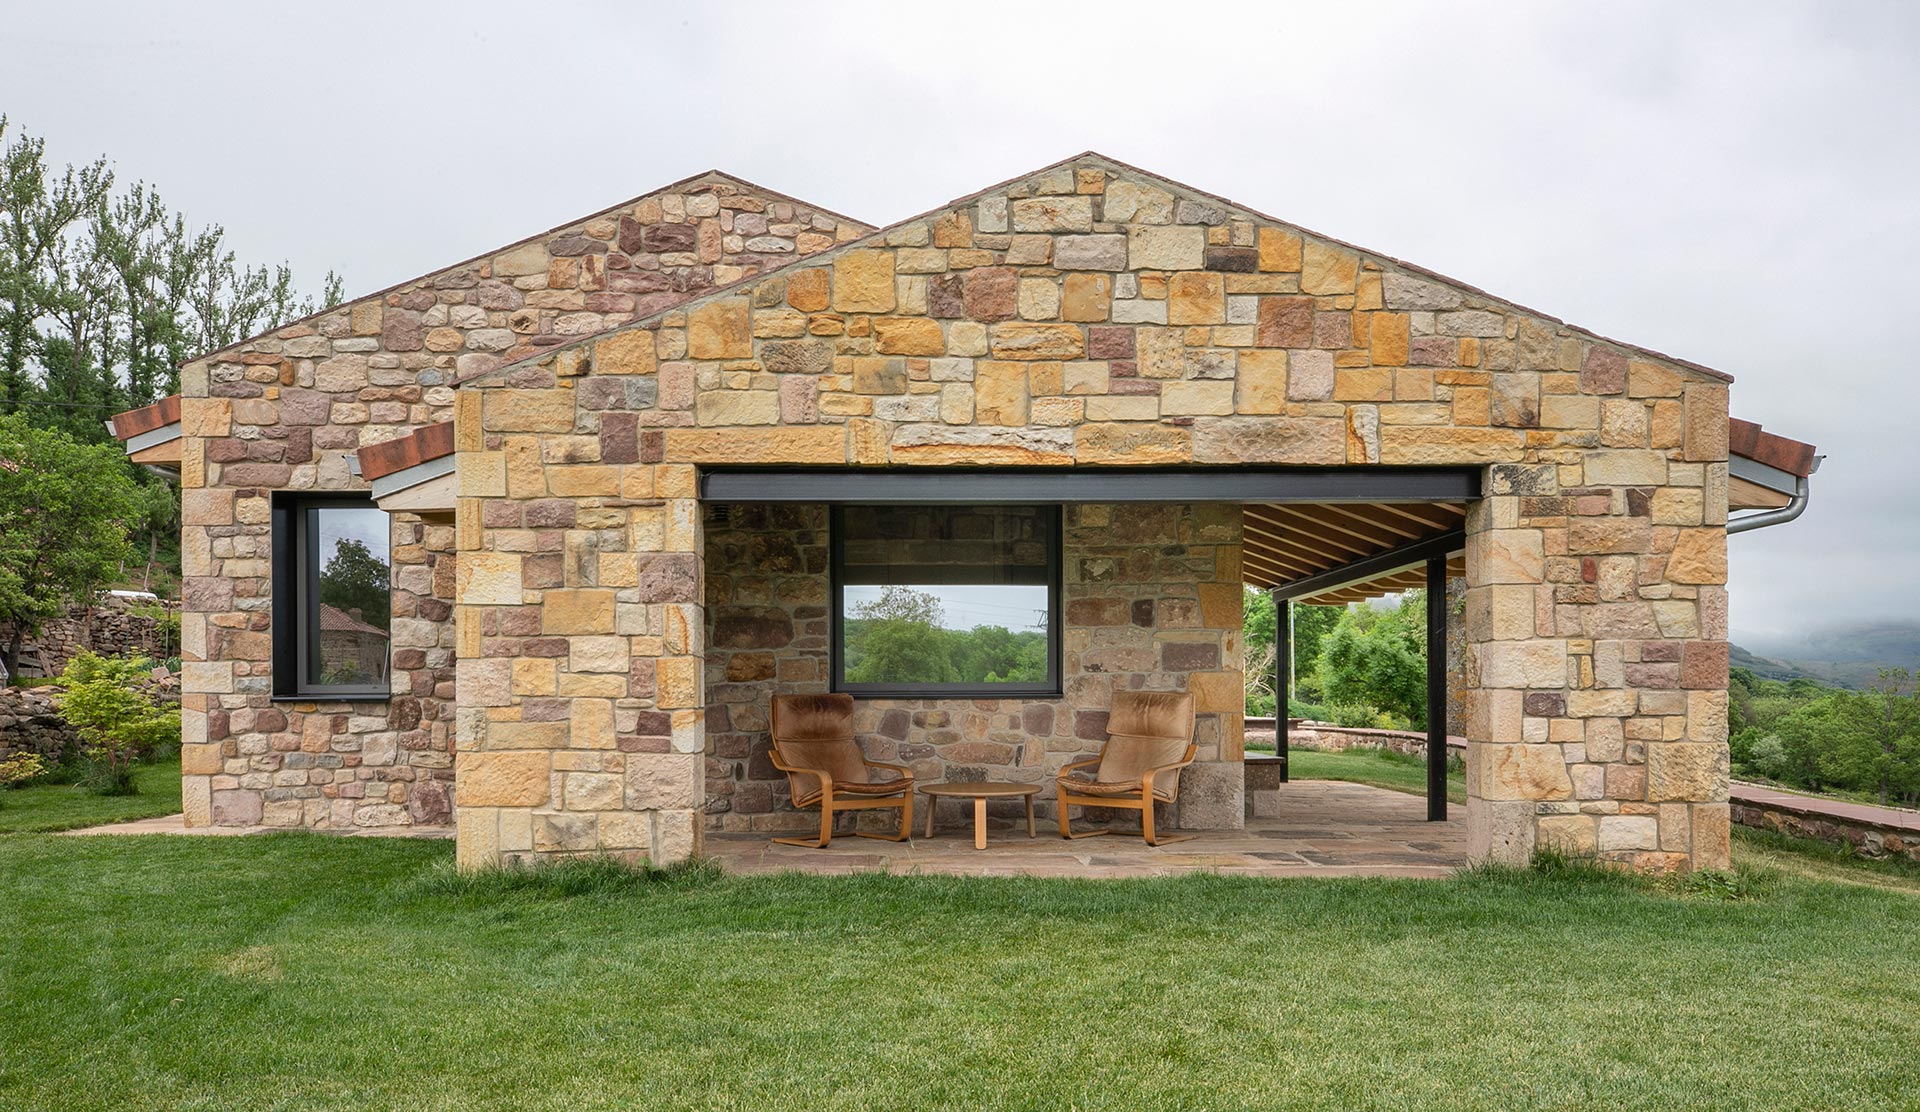 Cabaña piedra moderna en Proaño diseñada por Moah Arquitectos en Cantabria